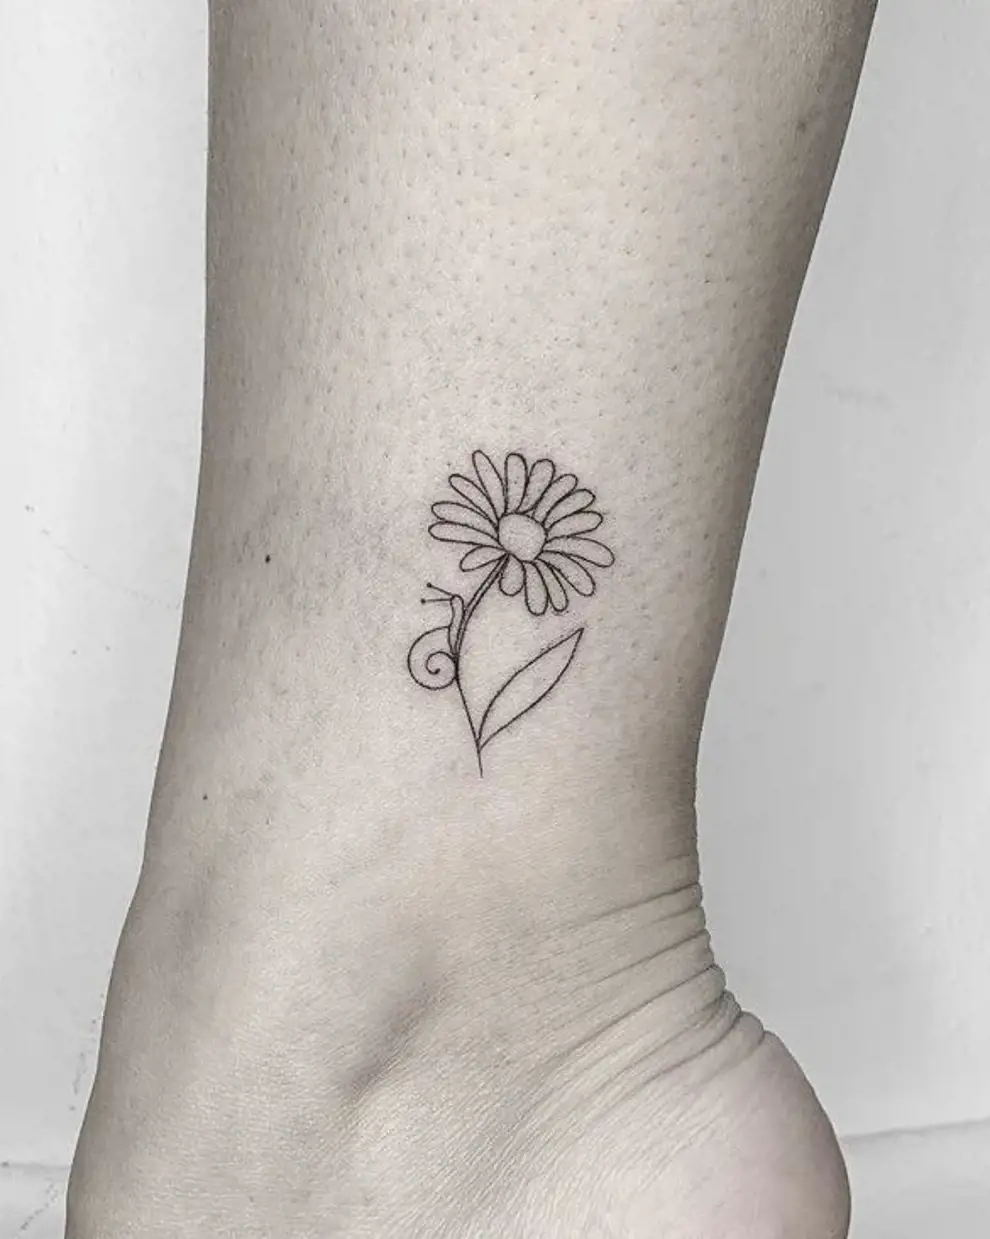 Tatuajes minimalistas mujer: flor y caracol